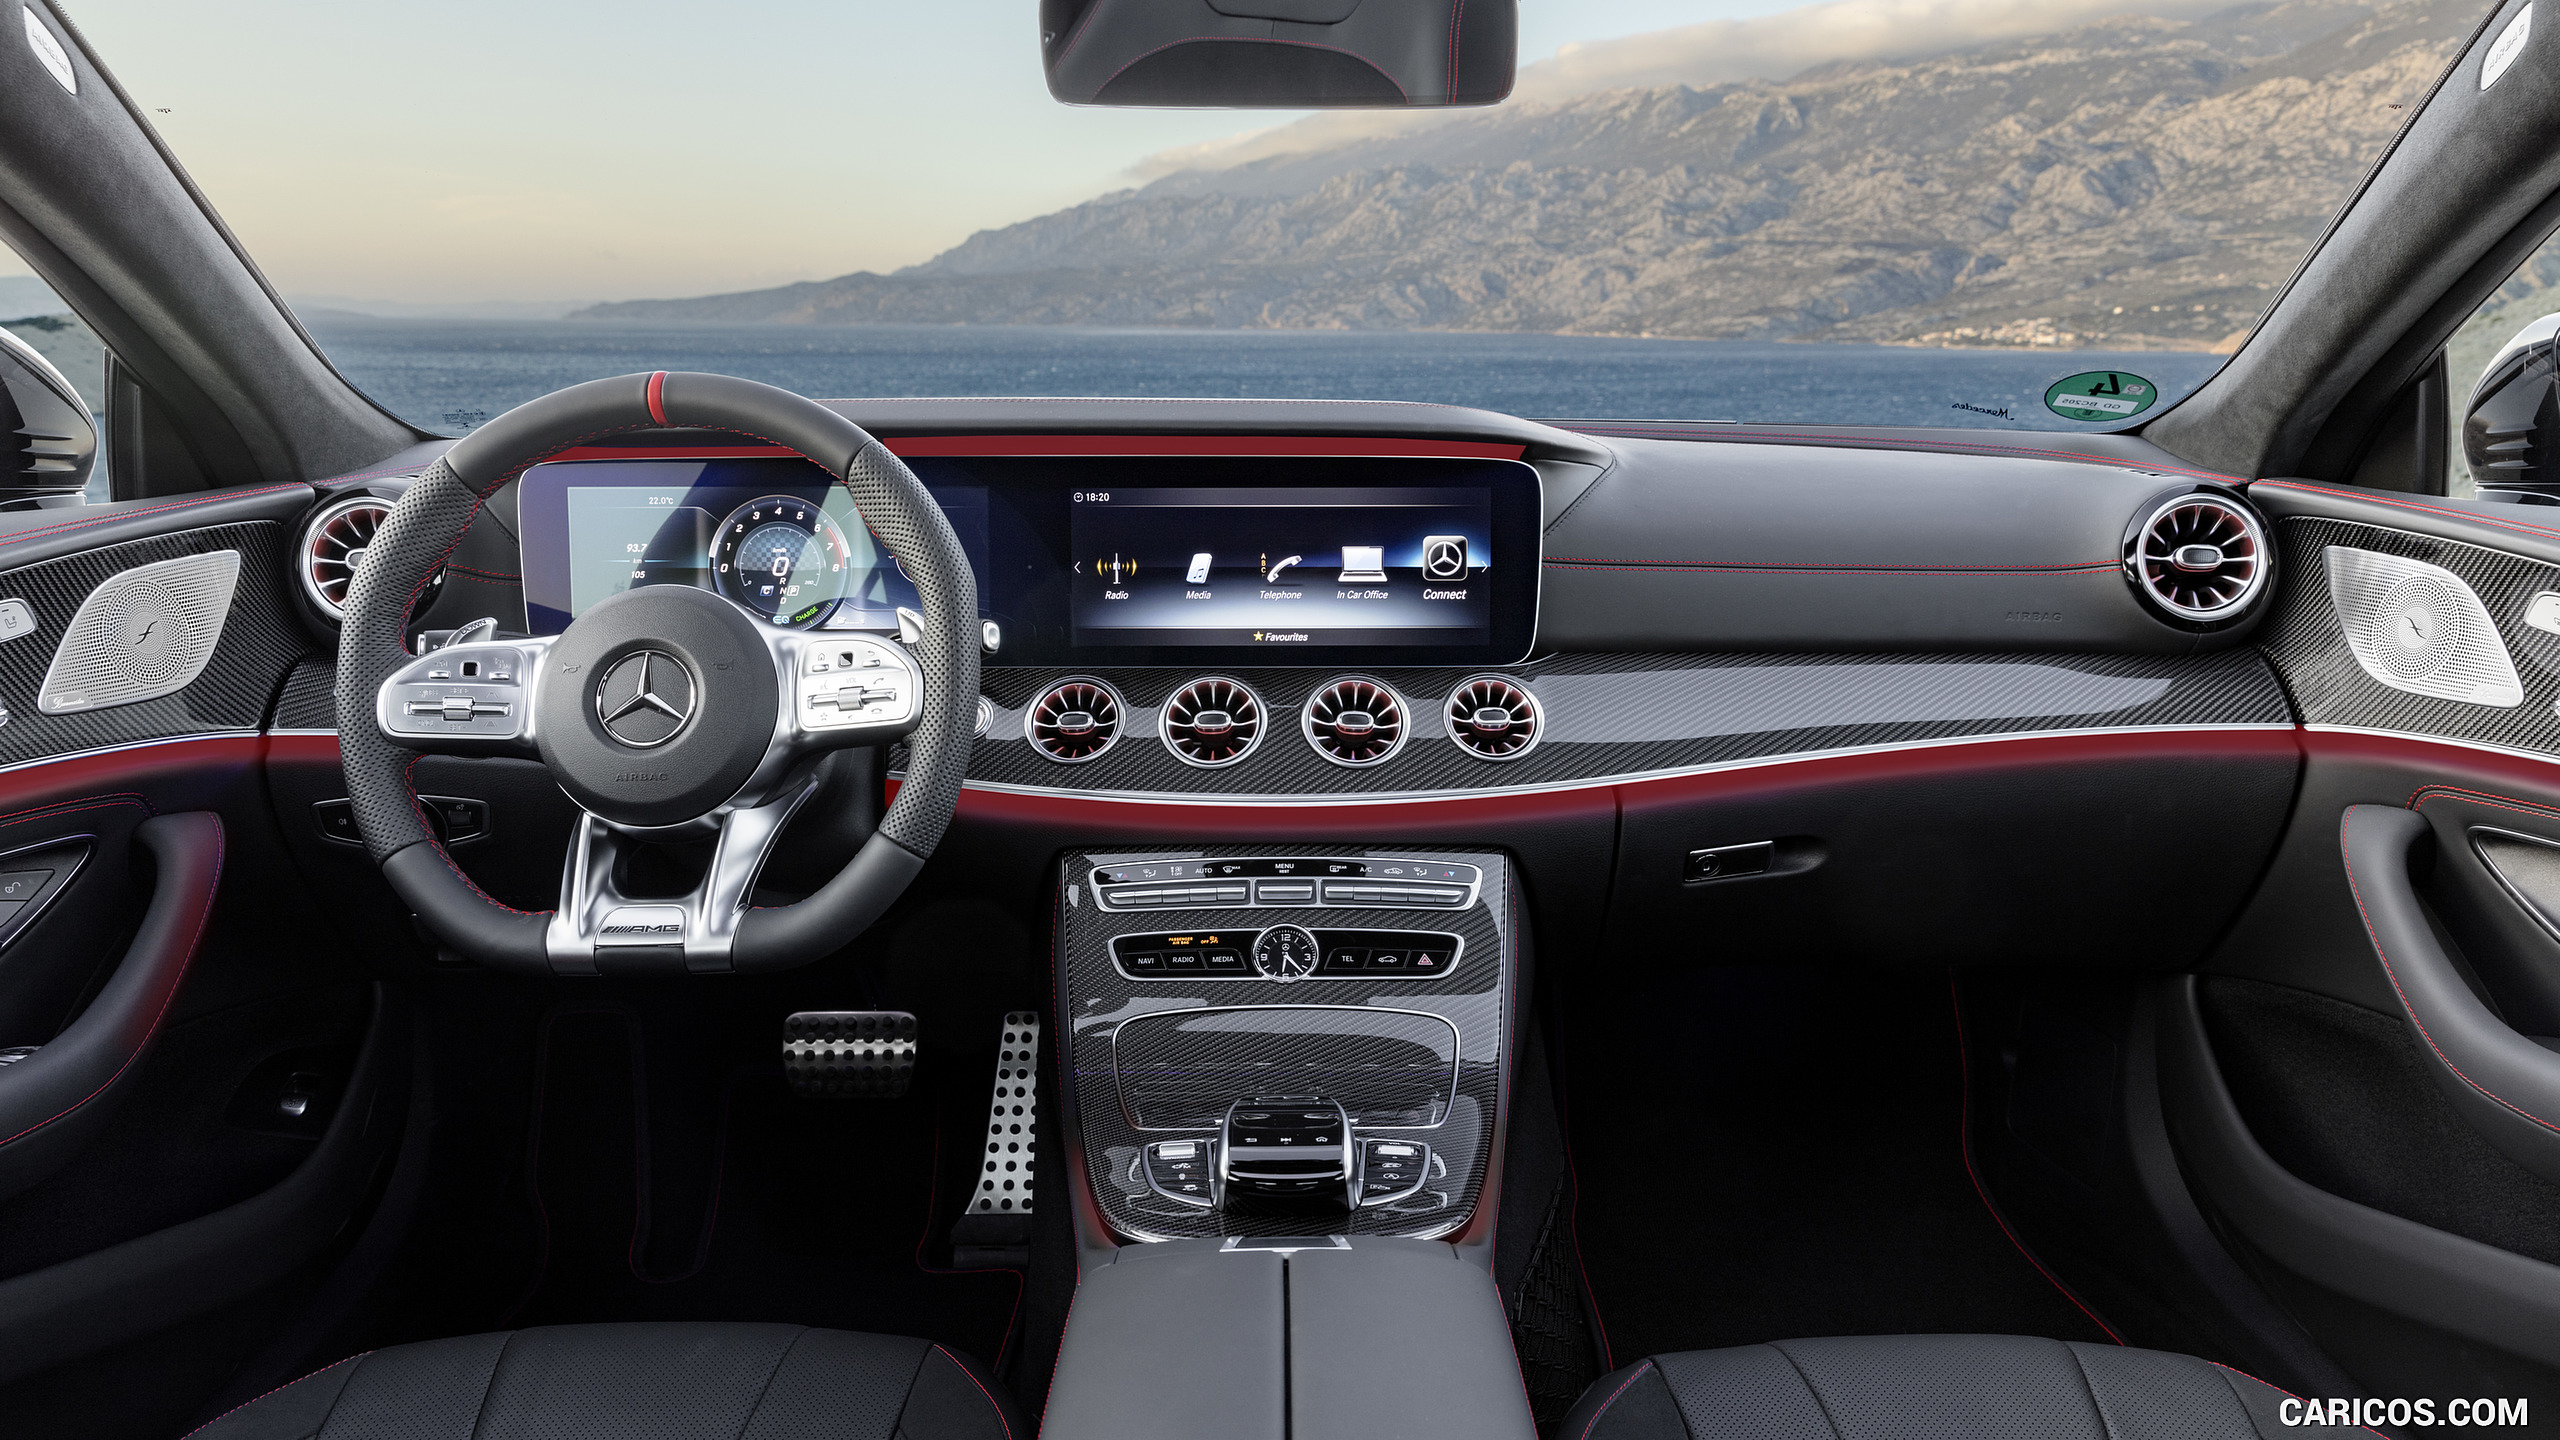 2019 Mercedes-AMG CLS 53 4MATIC+ - Interior, Cockpit, #19 of 84